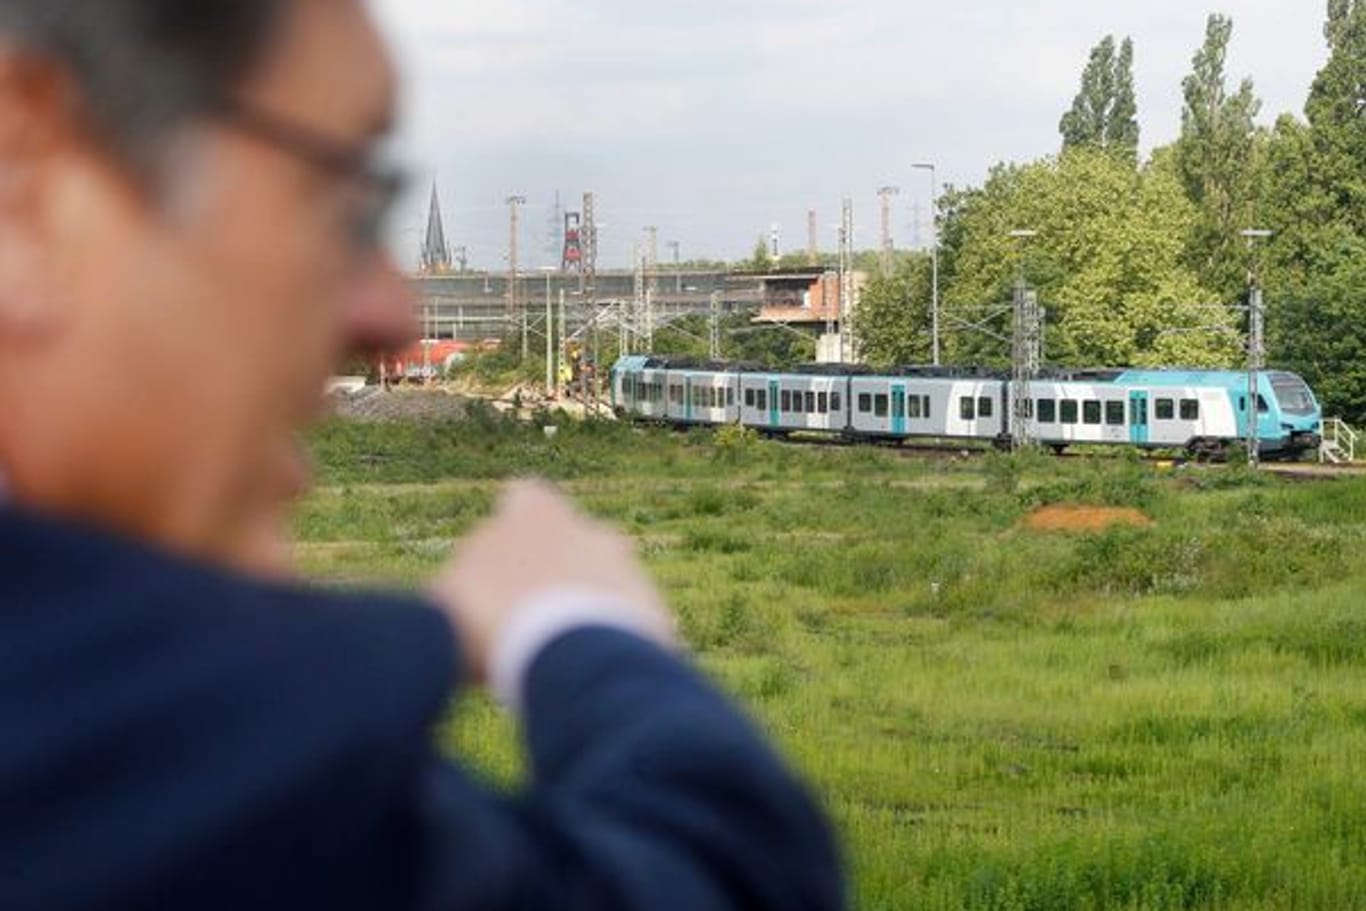 Hernes Bürgermeister Frank Dudda (SPD) erklärt den Verlauf einer geplanten Seilbahn, die den Bahnhof Wanne-Eickel mit dem dahinterliegenden alten Zechengelände verbinden soll.